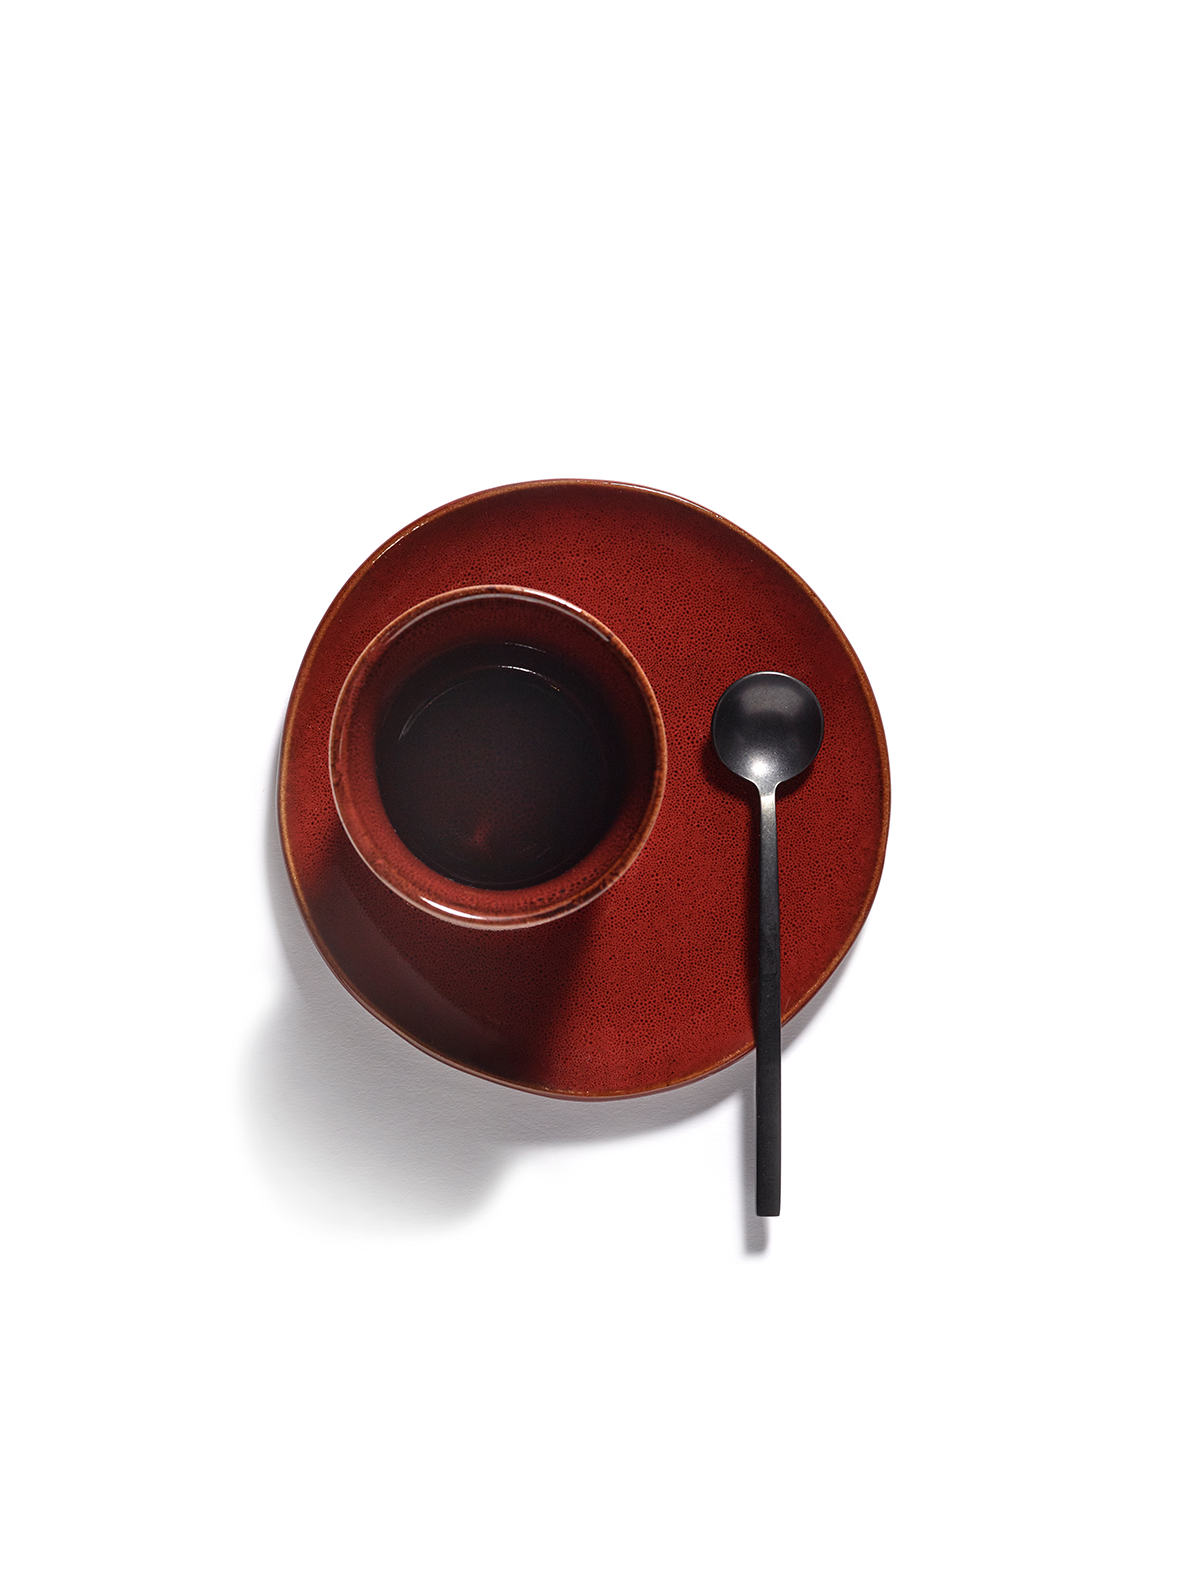 Espressocup - La Mère by Marie Michielssen - Venetian red